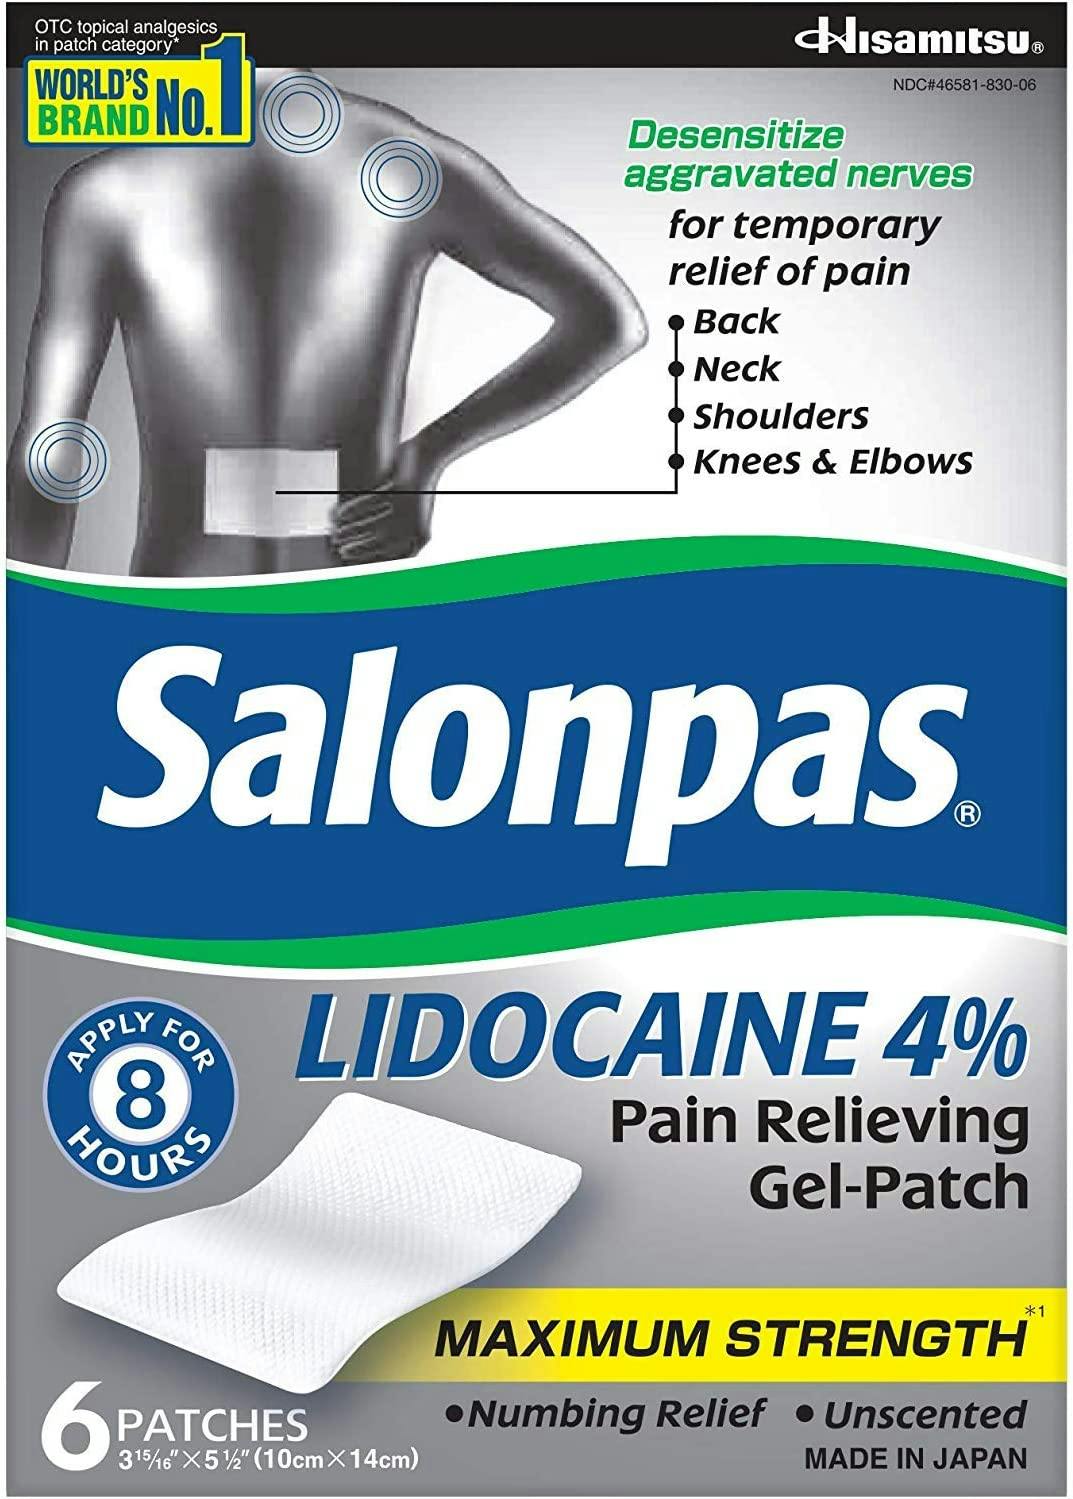 Salonpas Lidocaine 4% Pain Relieving Gel Patch Maximum Strength